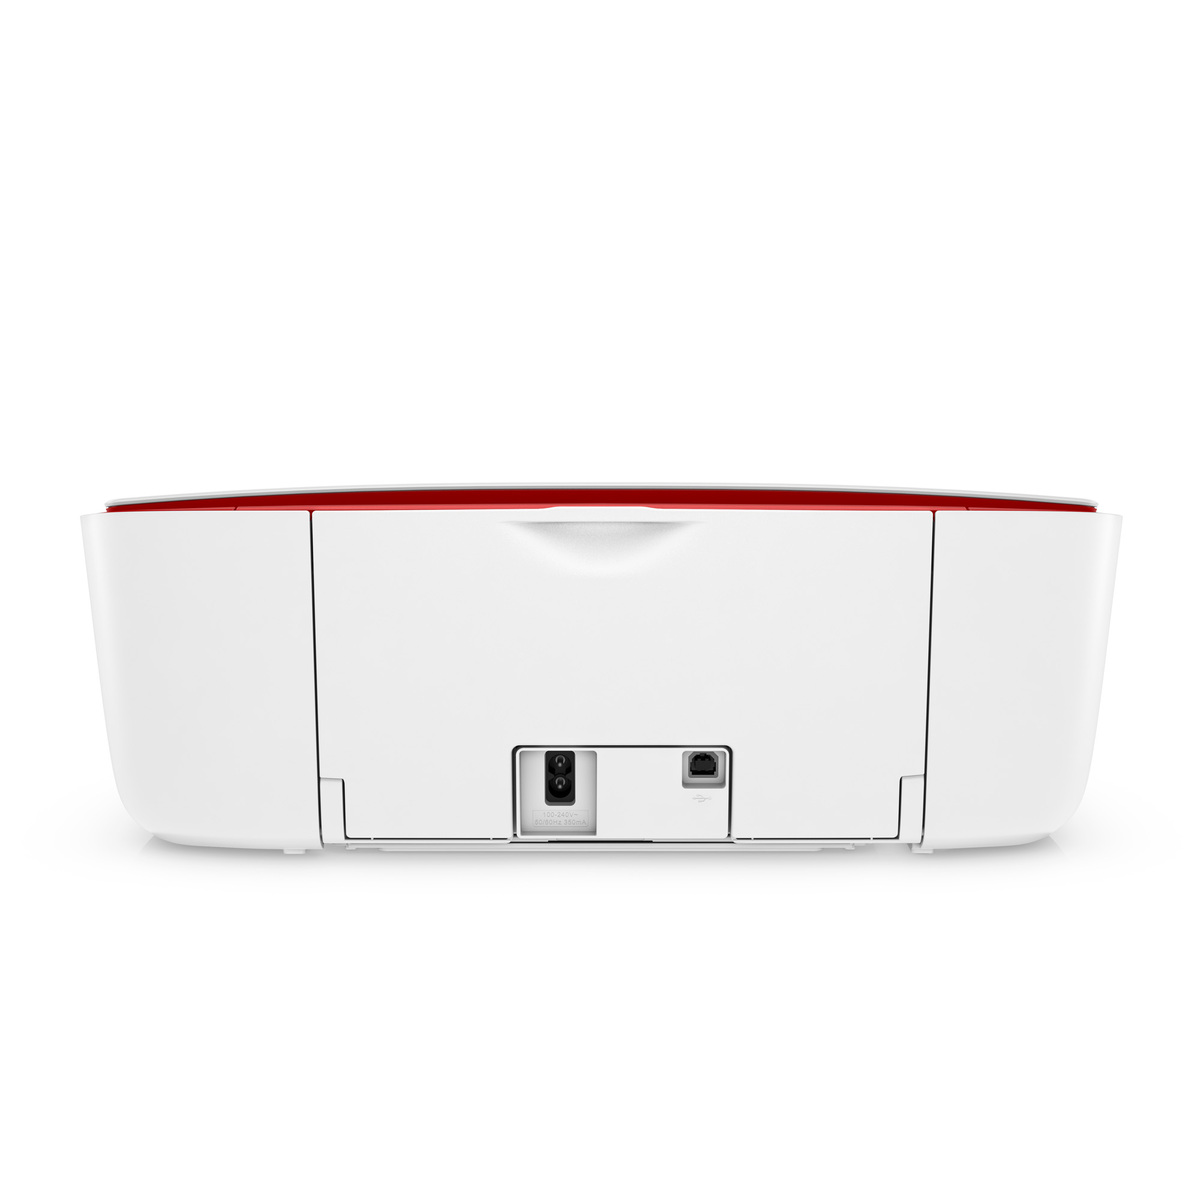 HP Deskjet Ink Advantage 3788 Wireless All-in-One Printer, Red, T8W49C